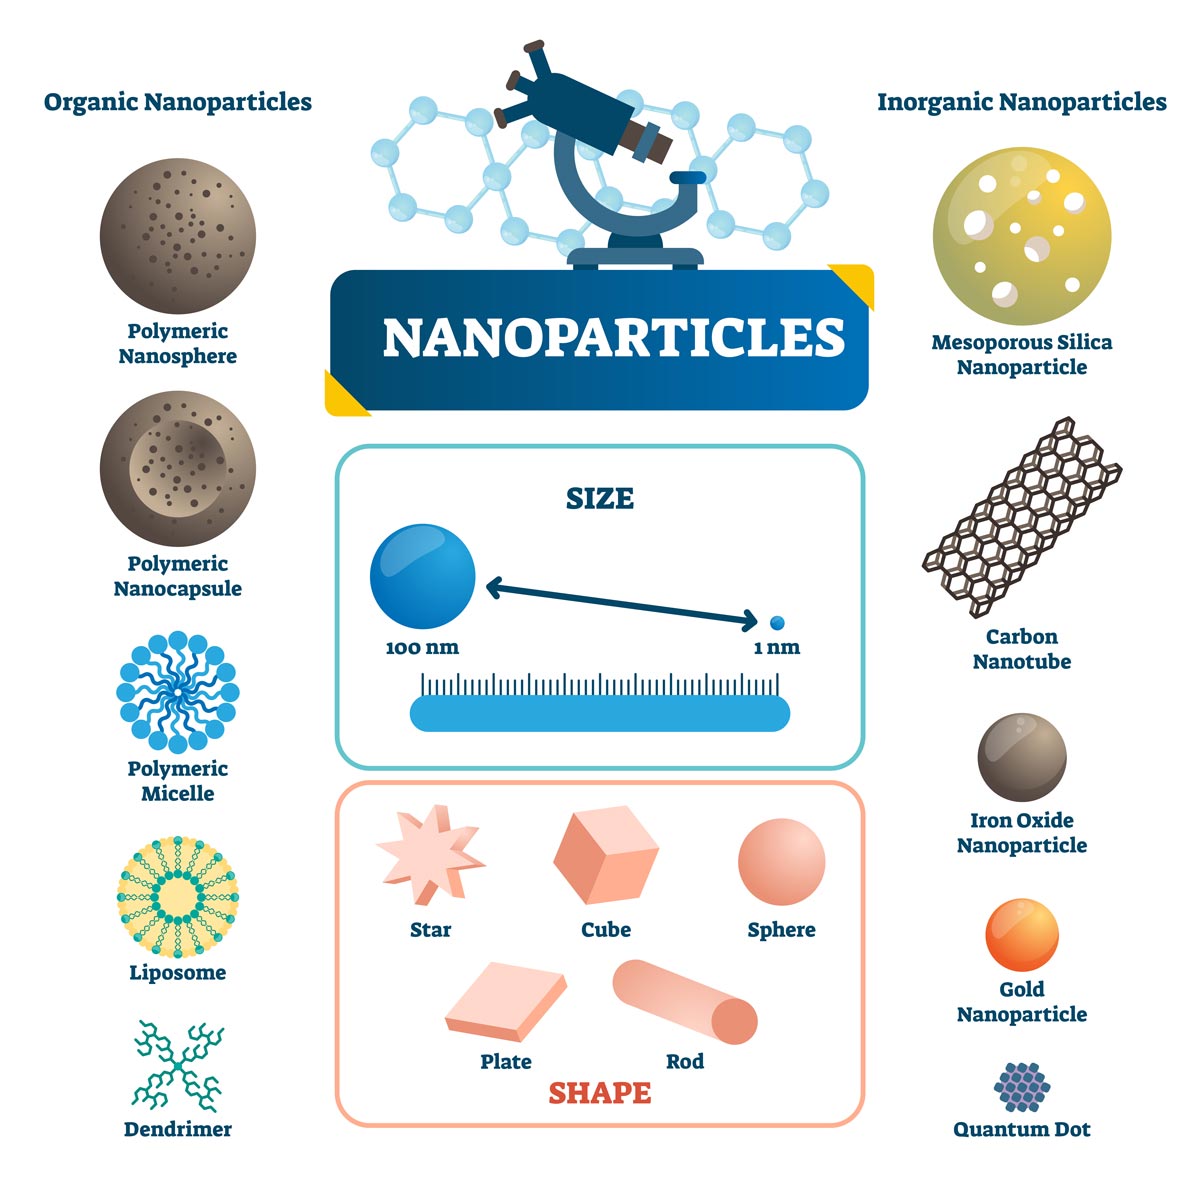 Exemples de nanoparticules organiques et inorganiques, avec leur taille, leur forme et les matériaux qui les composent